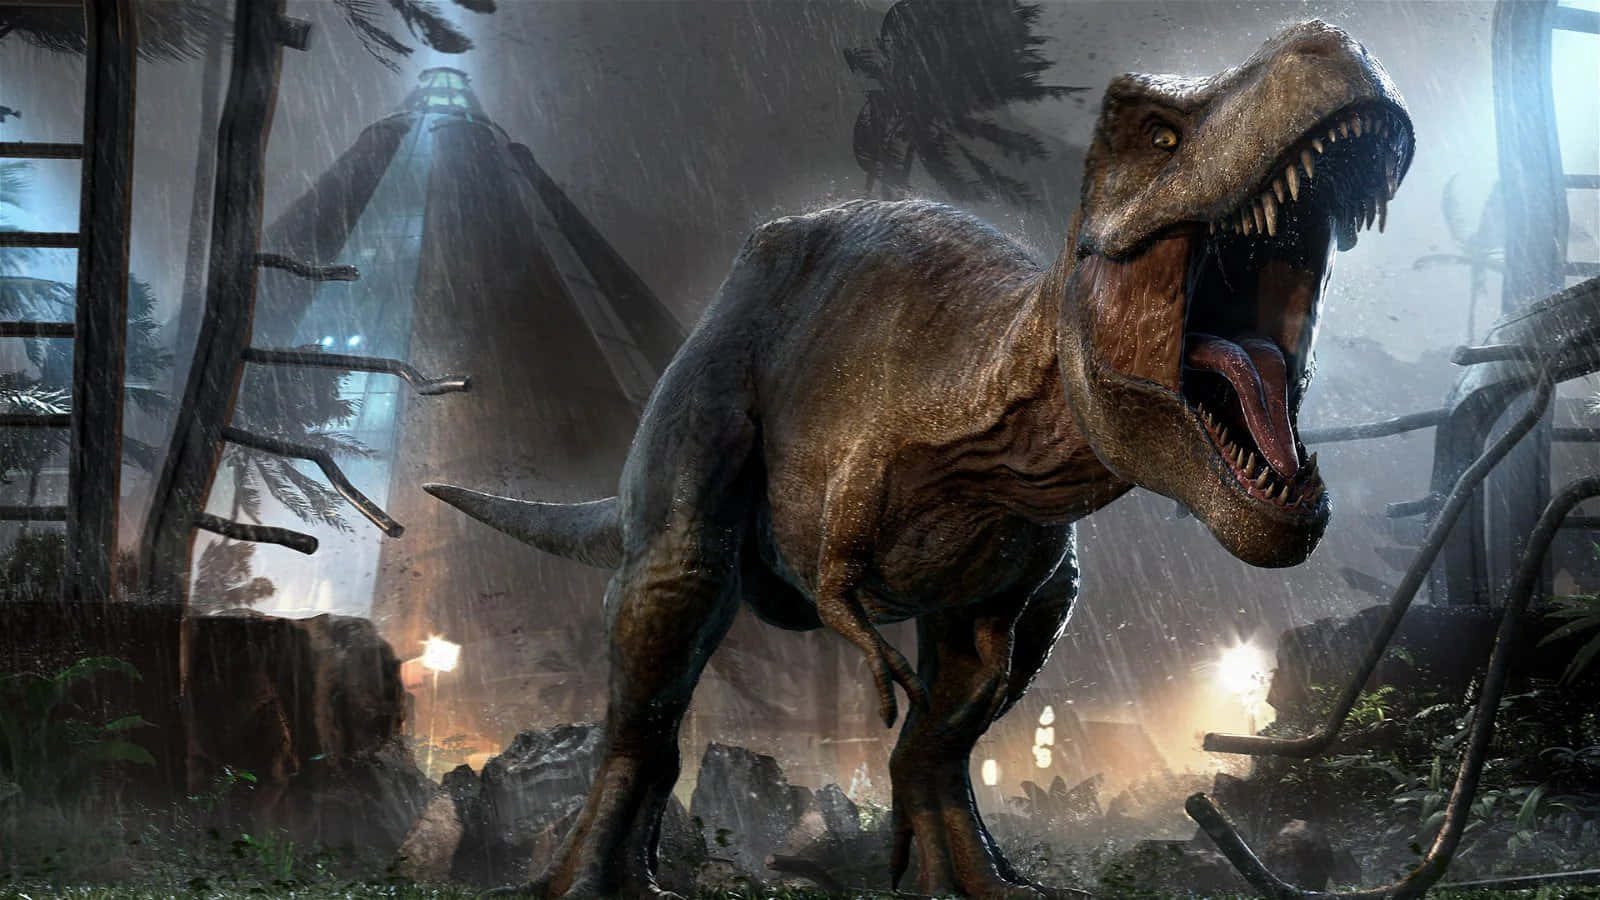 Welcome to Jurassic World, where dinosaurs roam